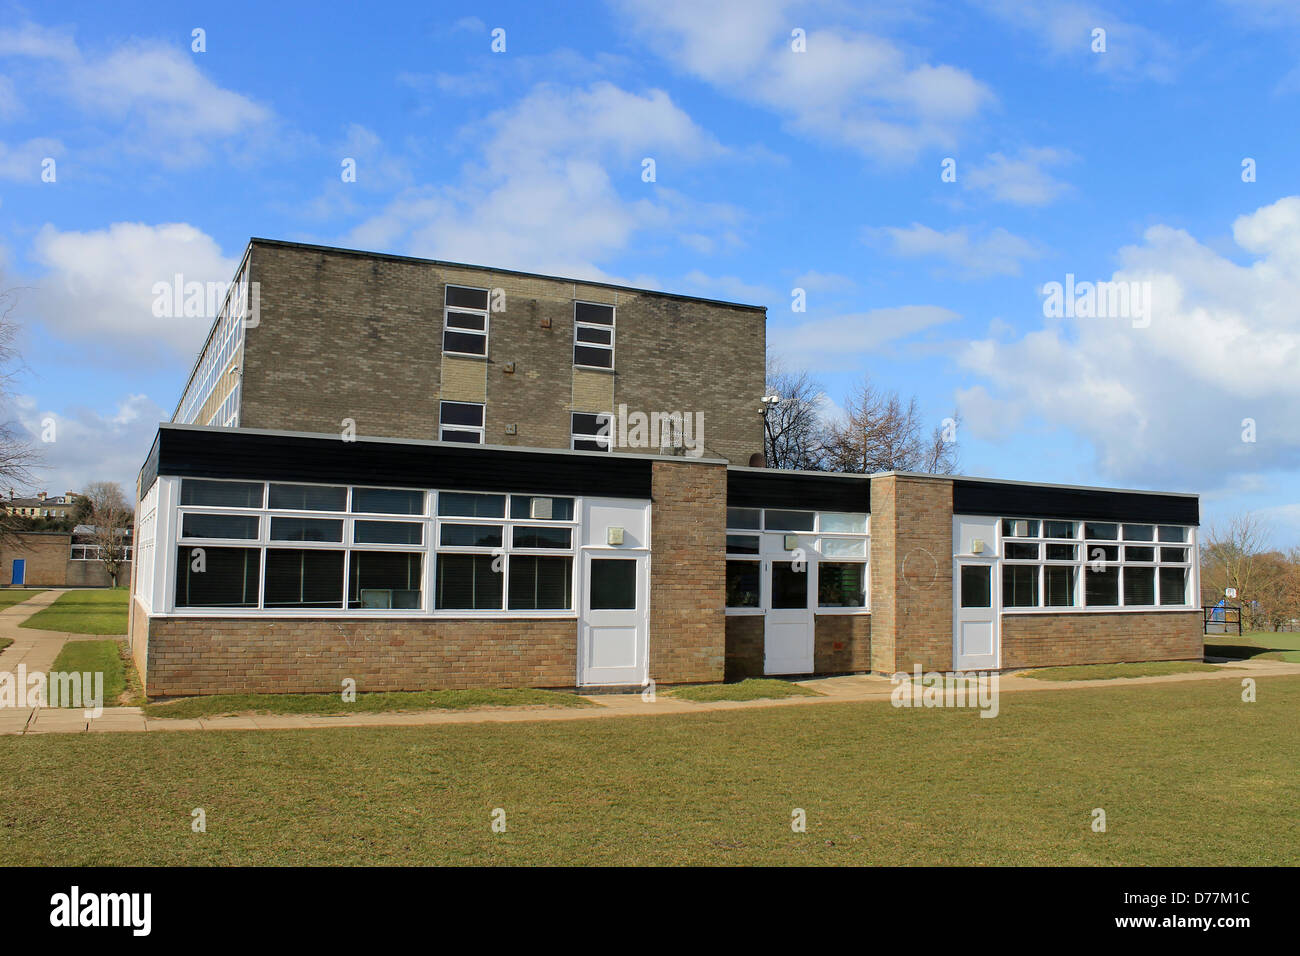 L'extérieur du bâtiment de l'école secondaire dans la région de Scarborough, Angleterre. Banque D'Images